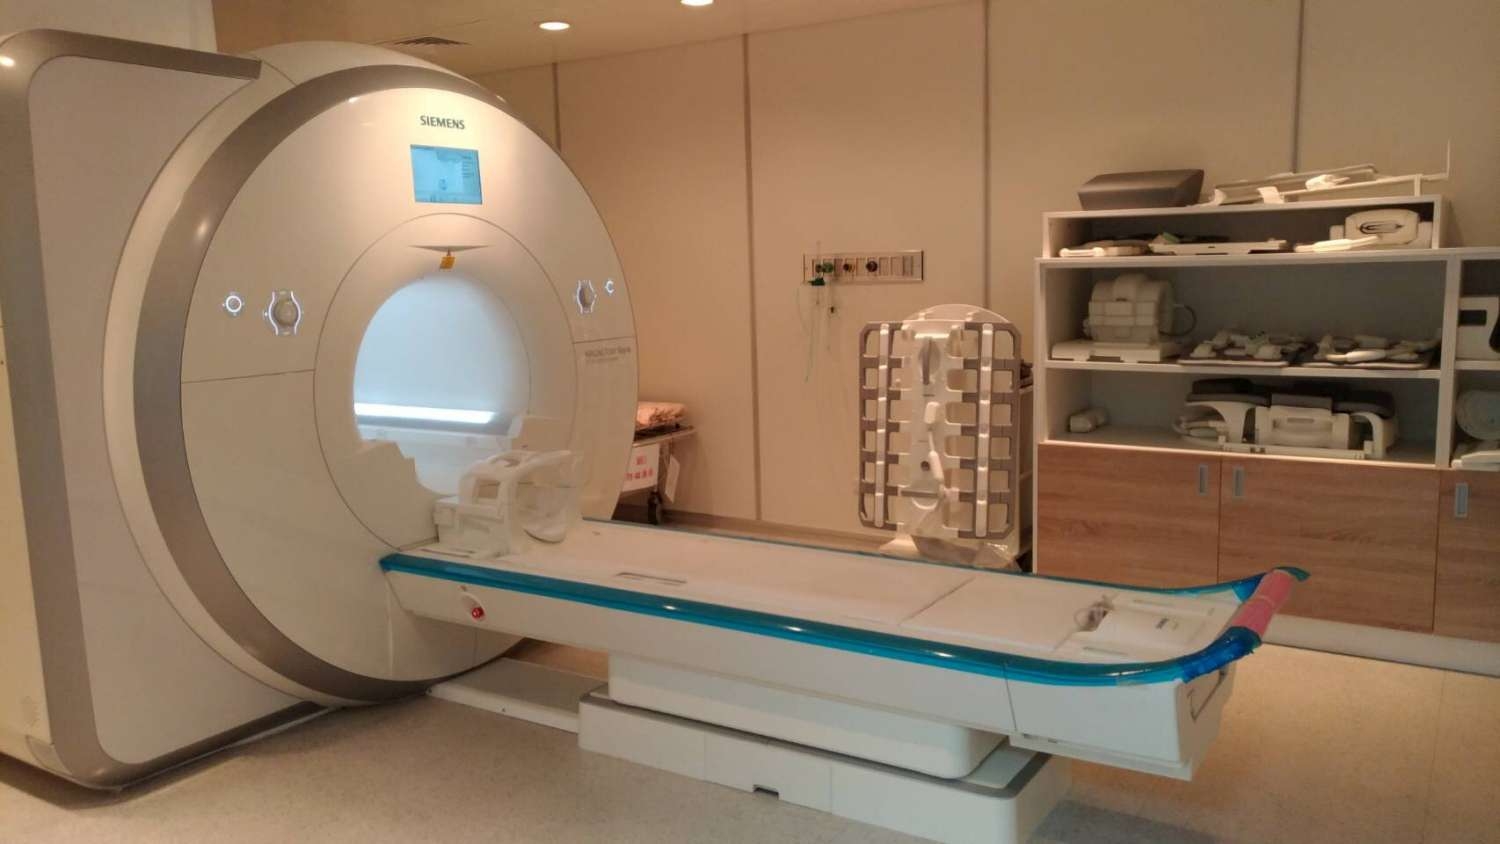 台大醫院新竹分院啟用癌症診斷利器「3T磁振造影儀」 林智堅市長：造福竹苗地區民眾